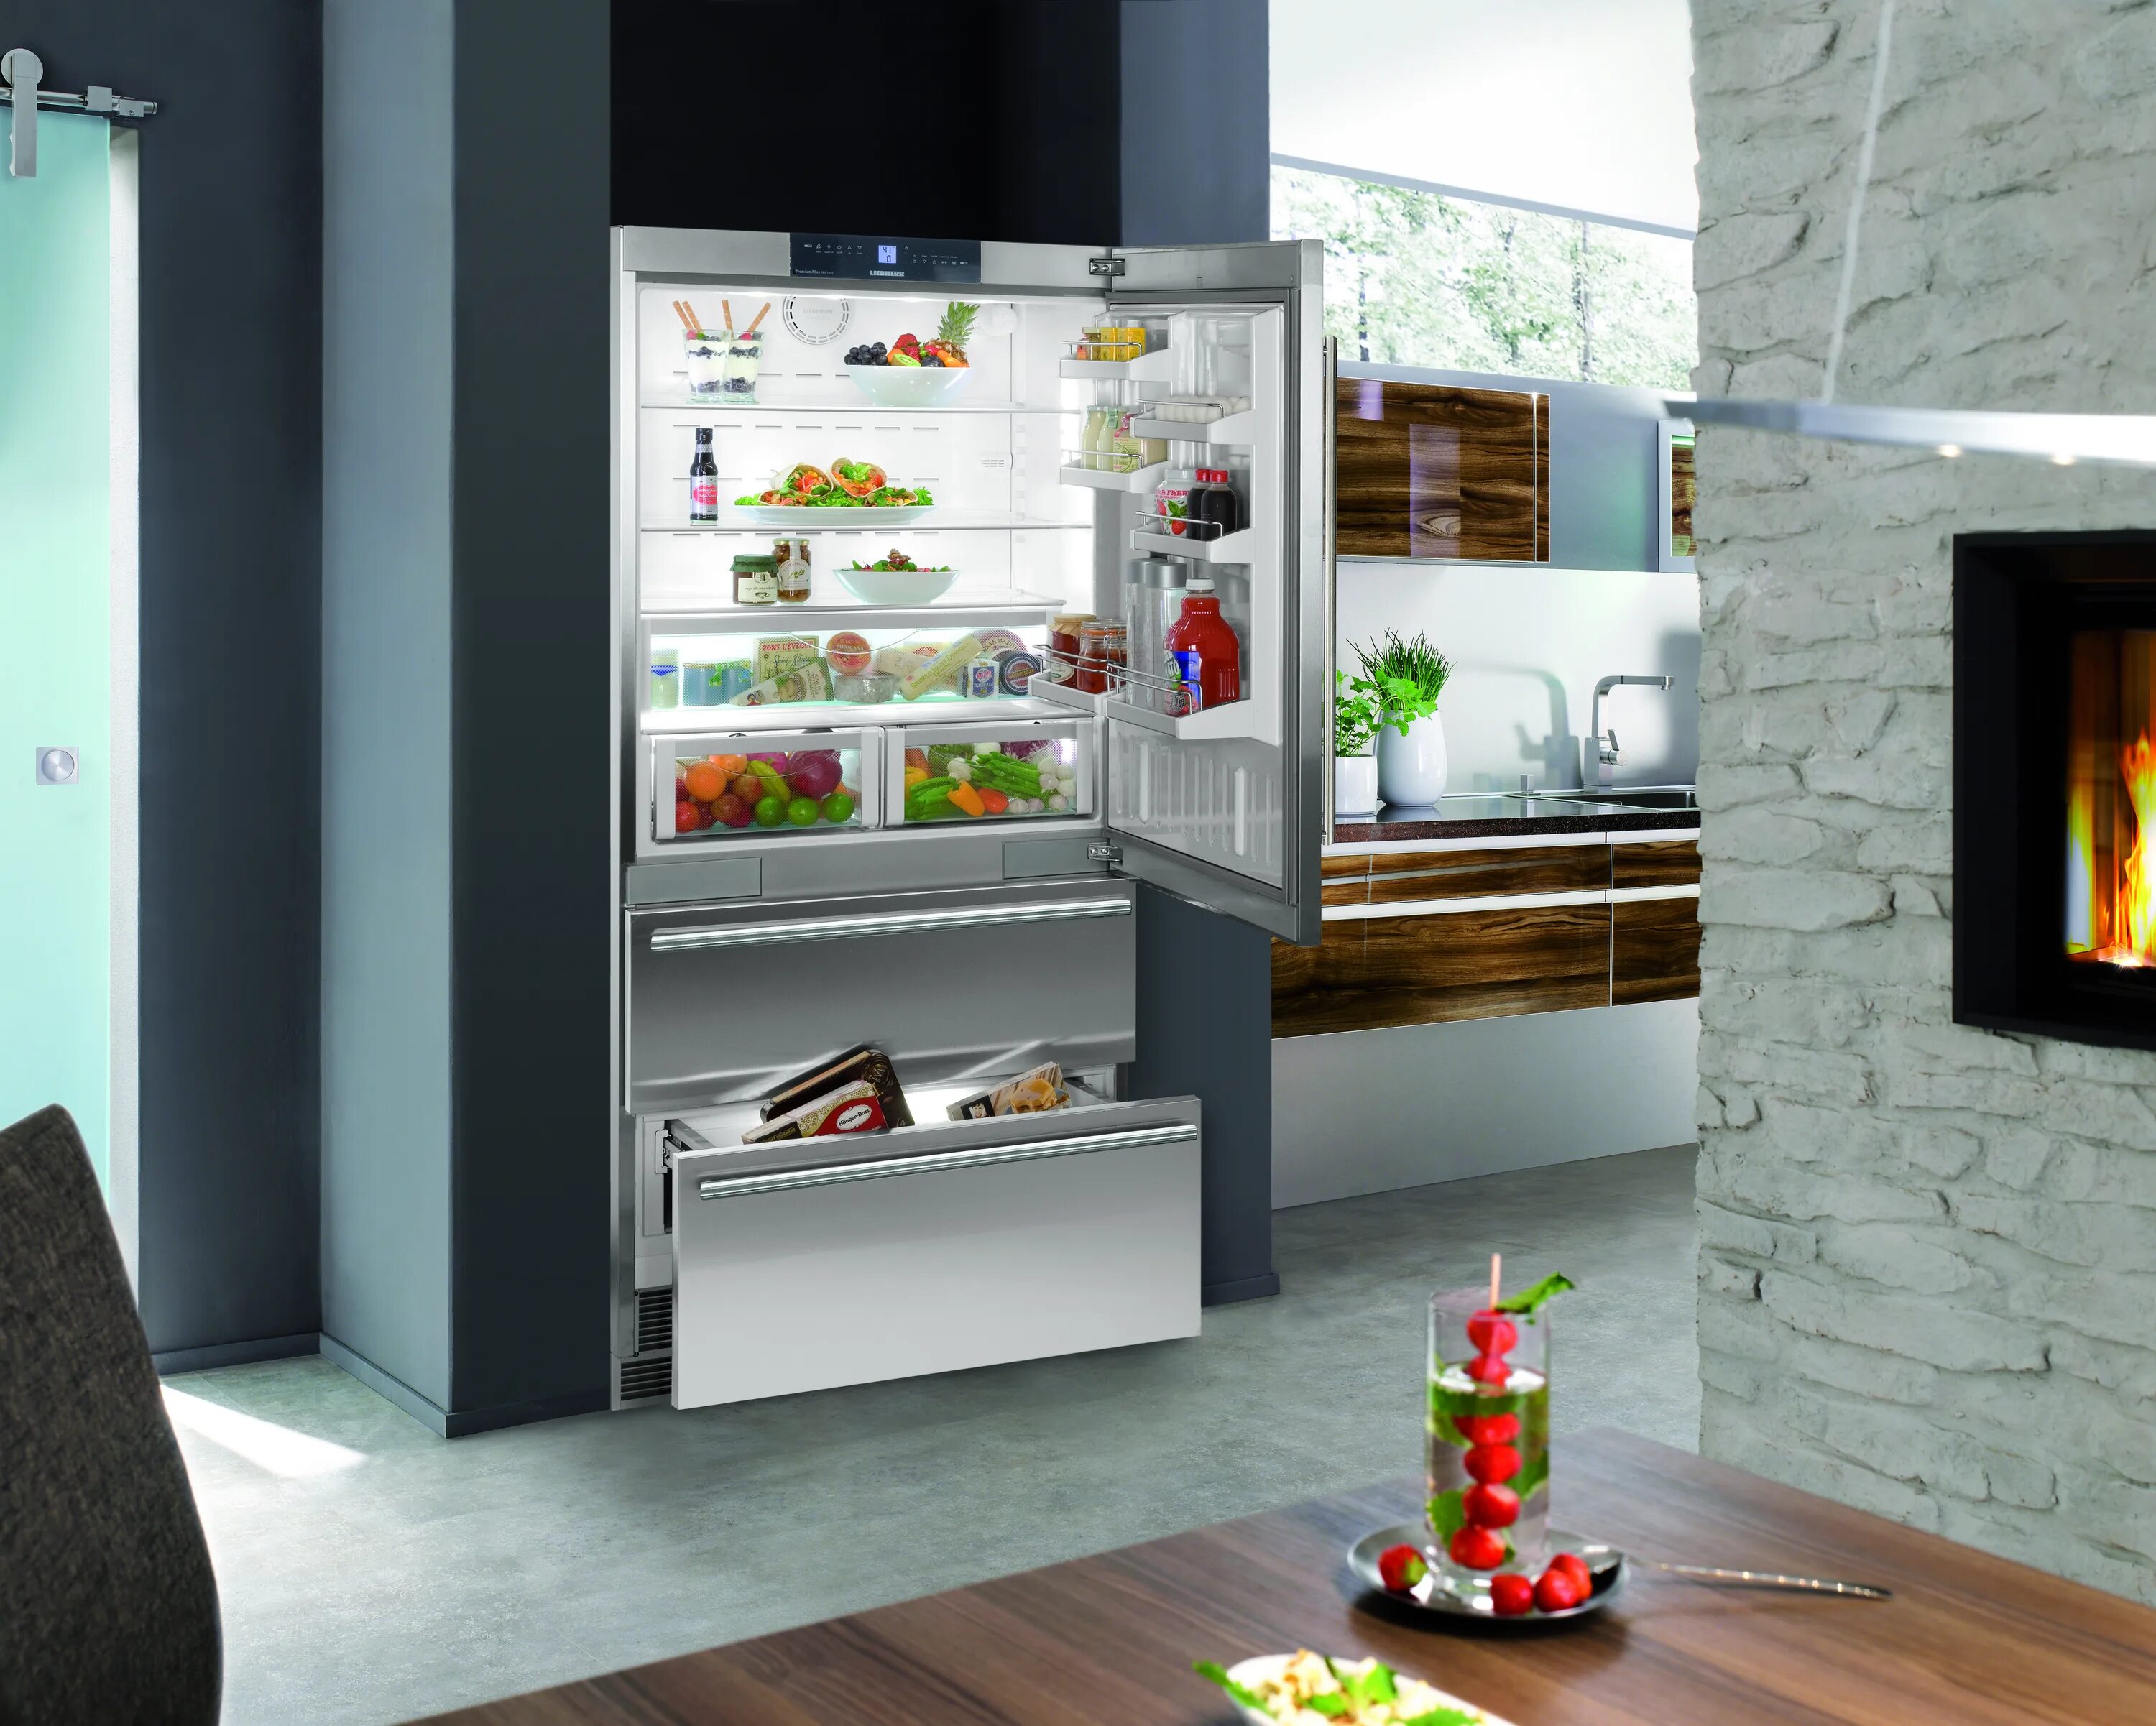 Холодильник Liebherr French Door. Либхер cs2060. Встраиваемый холодильник Либхер. Встроенный холодильник 80см. Какие встроенные холодильники лучше